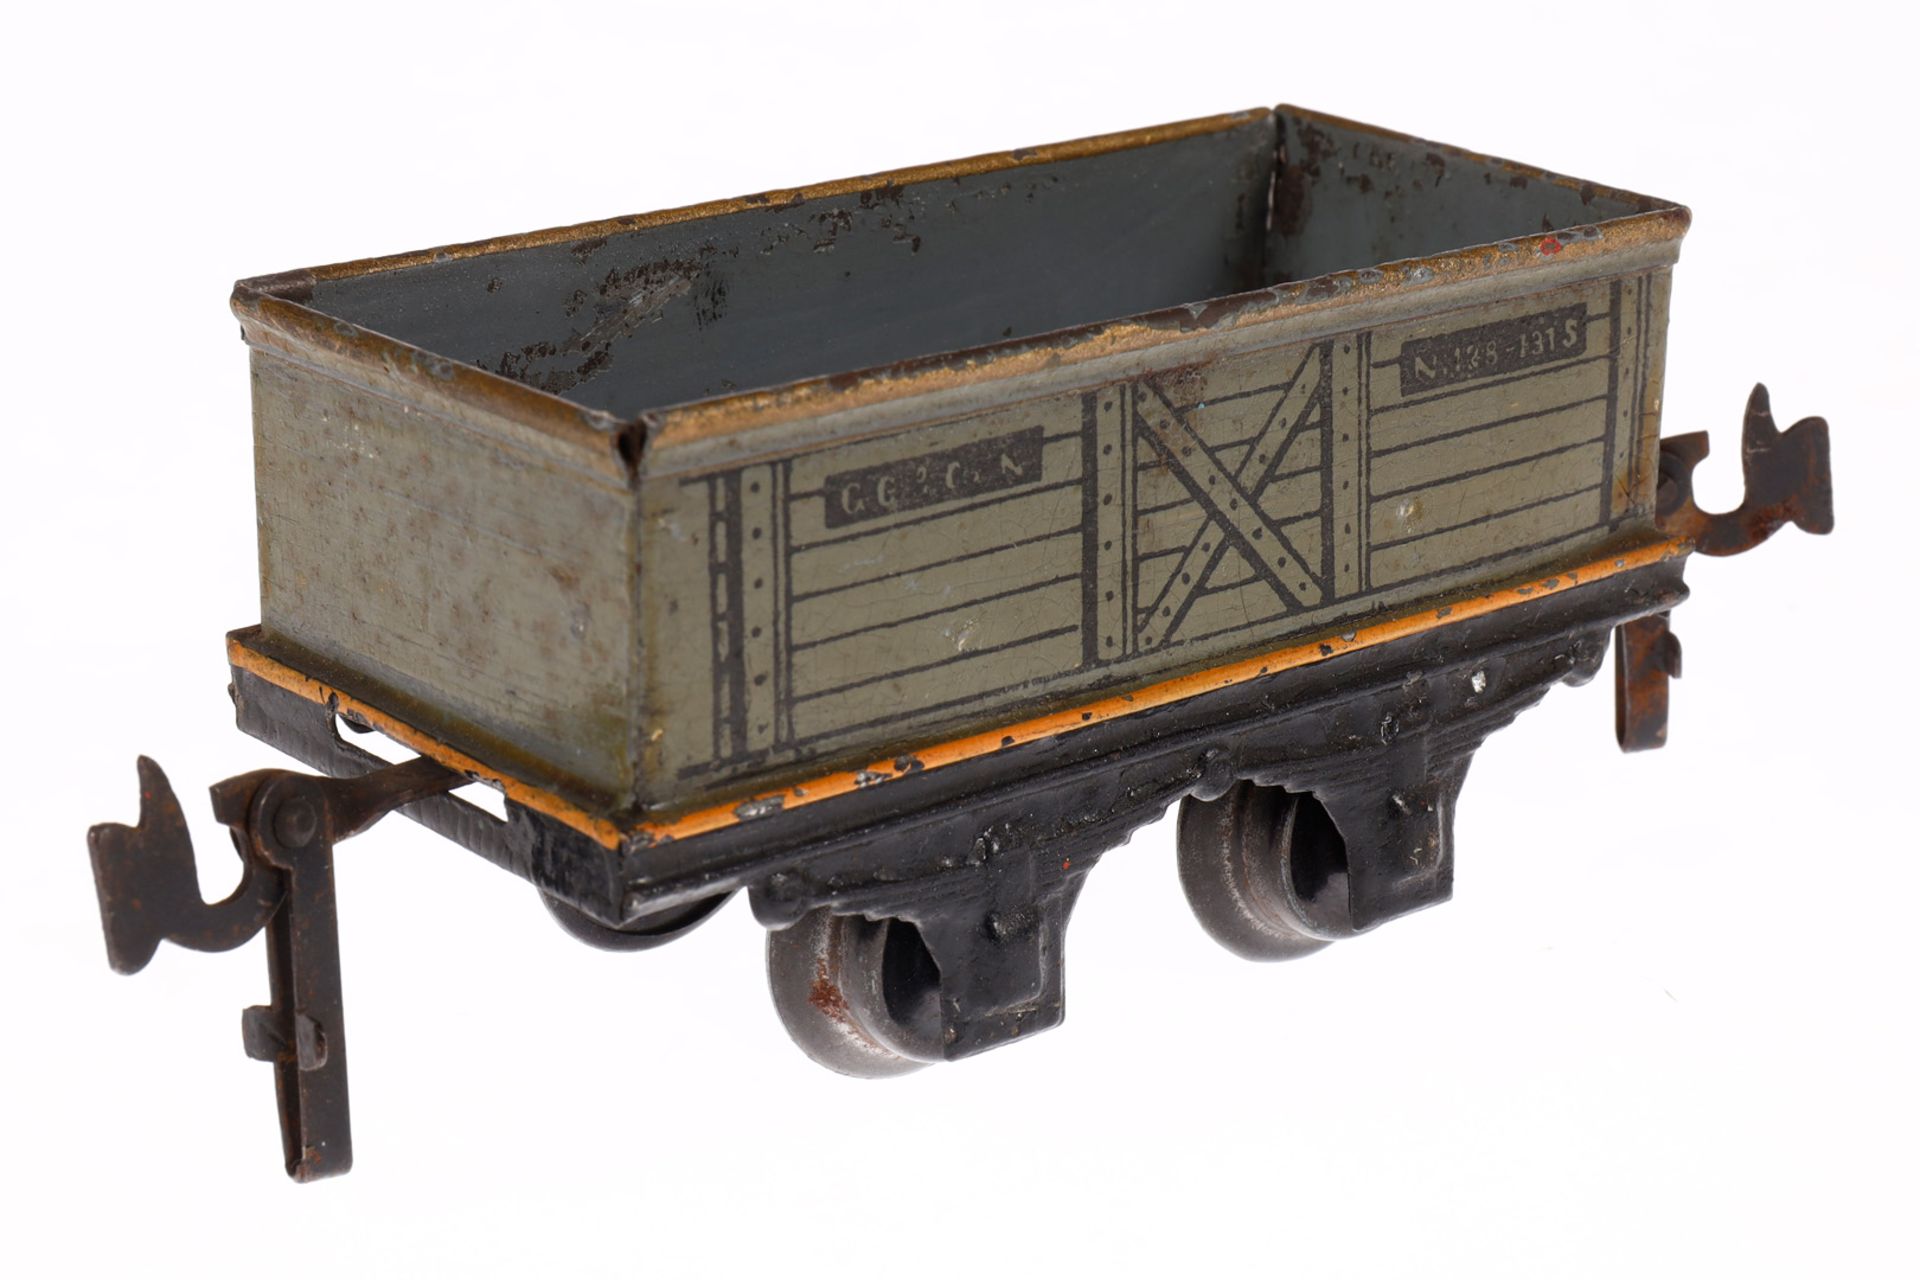 Carette offener Güterwagen, Spur 0, uralt, HL, Radsätze ergänzt, LS, L 9, Z 3 - Image 3 of 5